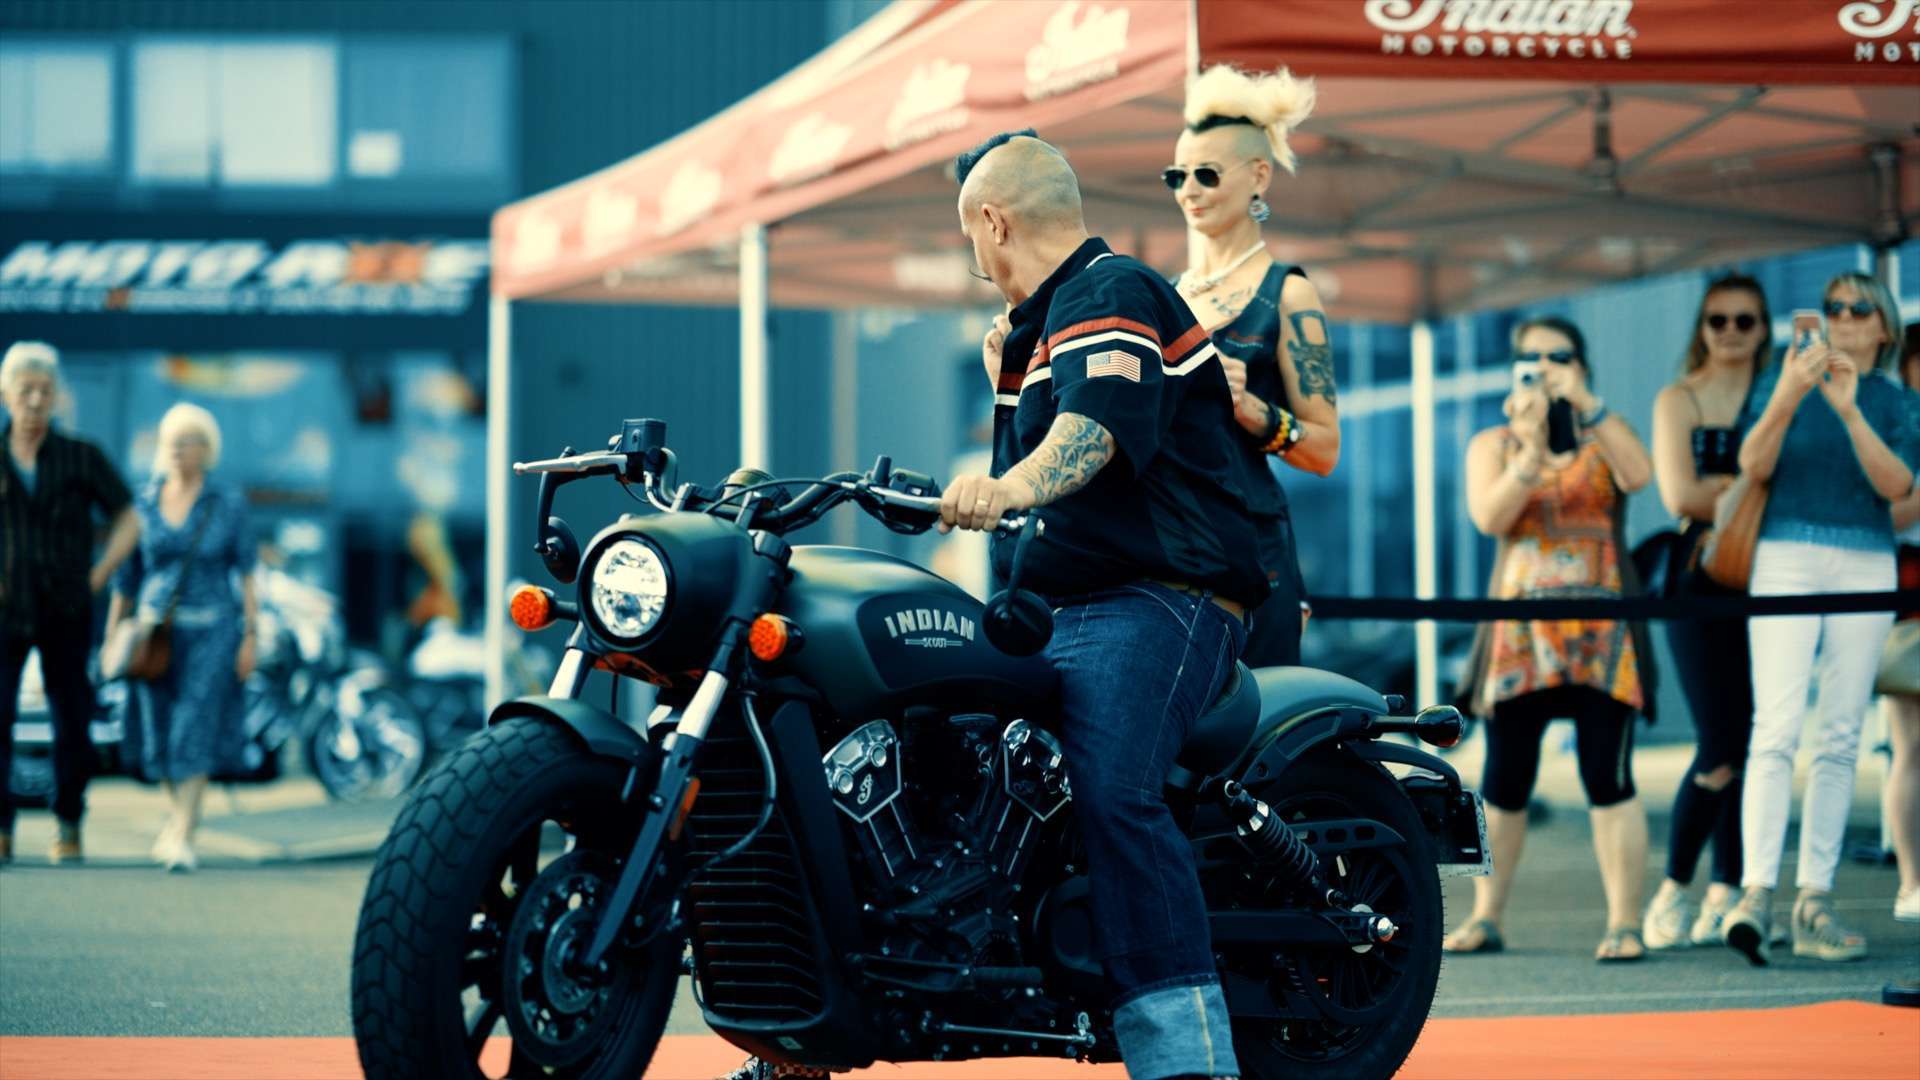 Indian Motorcycle, extrait de la vidéo de promotion du roadshow organisé par la concession Indian de Poitiers.